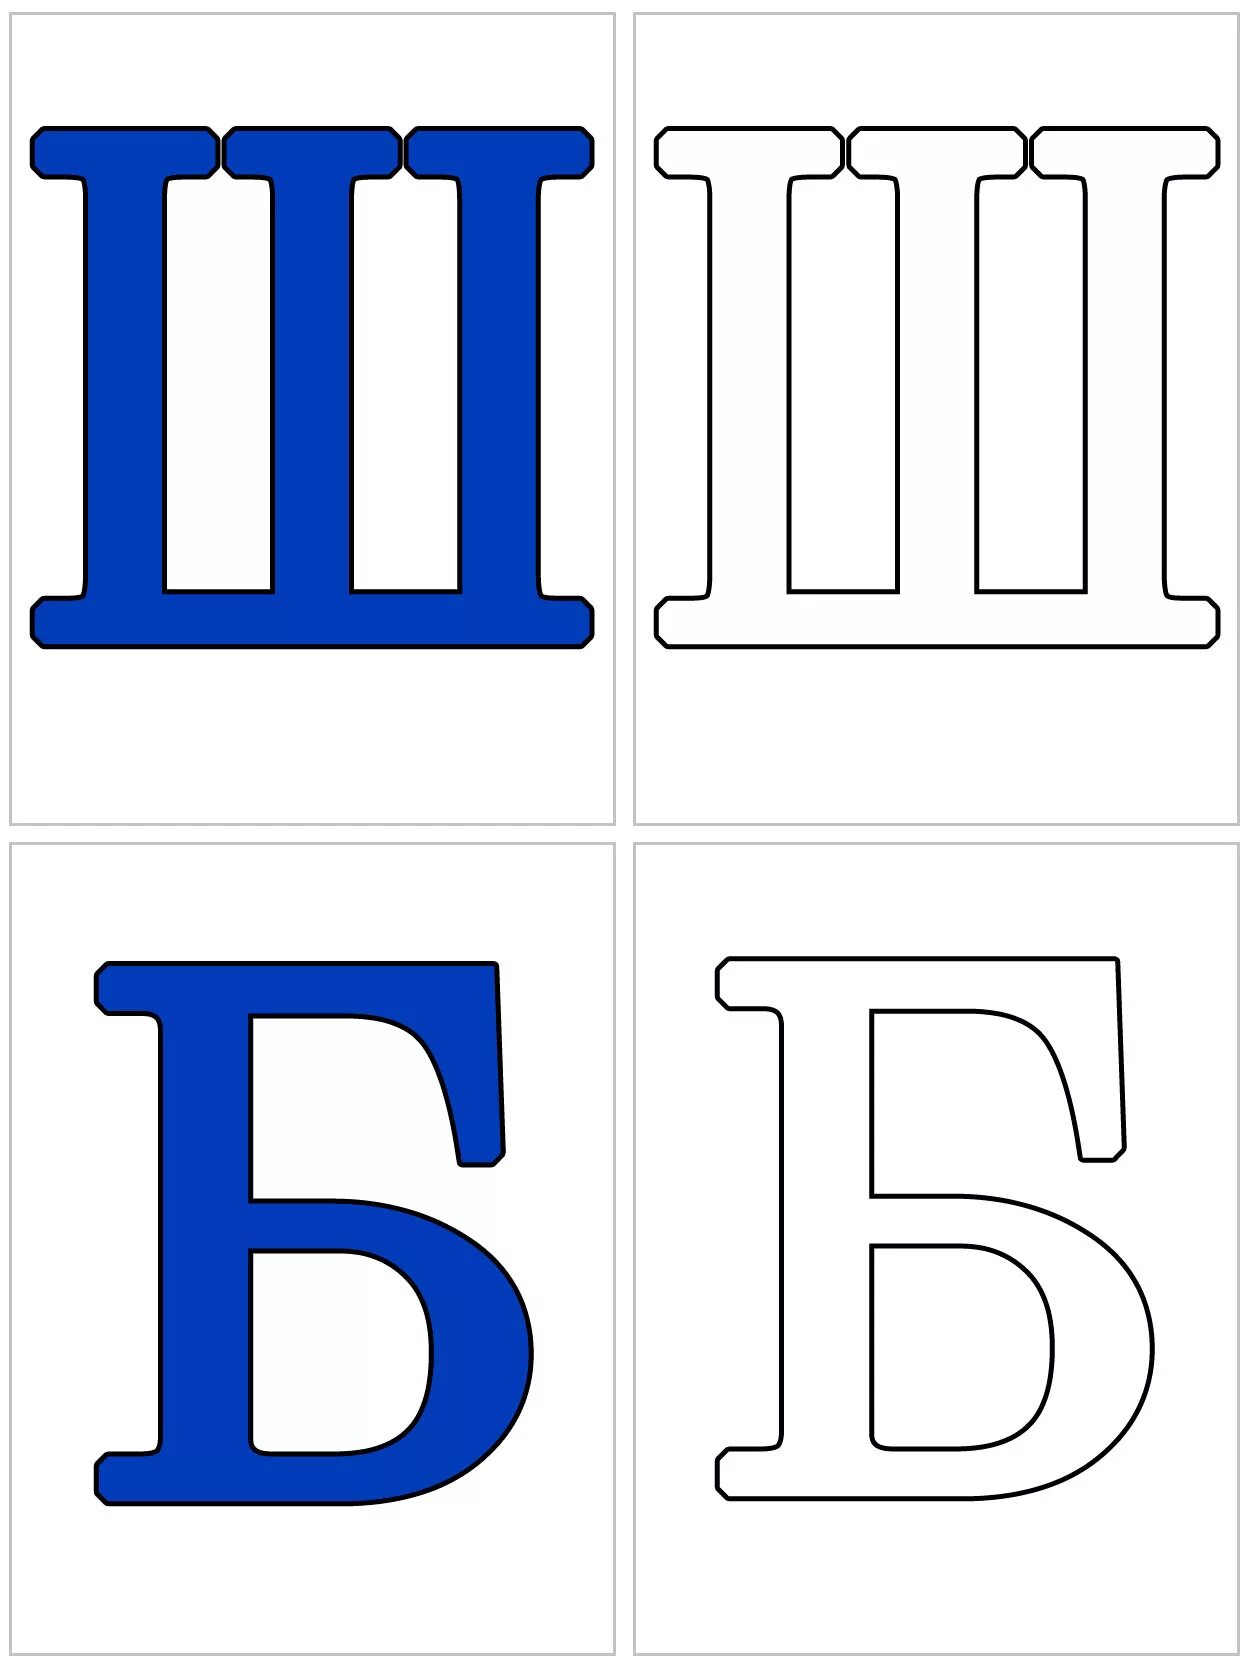 Алфавит и буквы. Карточки с буквами. Буквы алфавита для распечатки. Буквы алфавита для распечатывания.